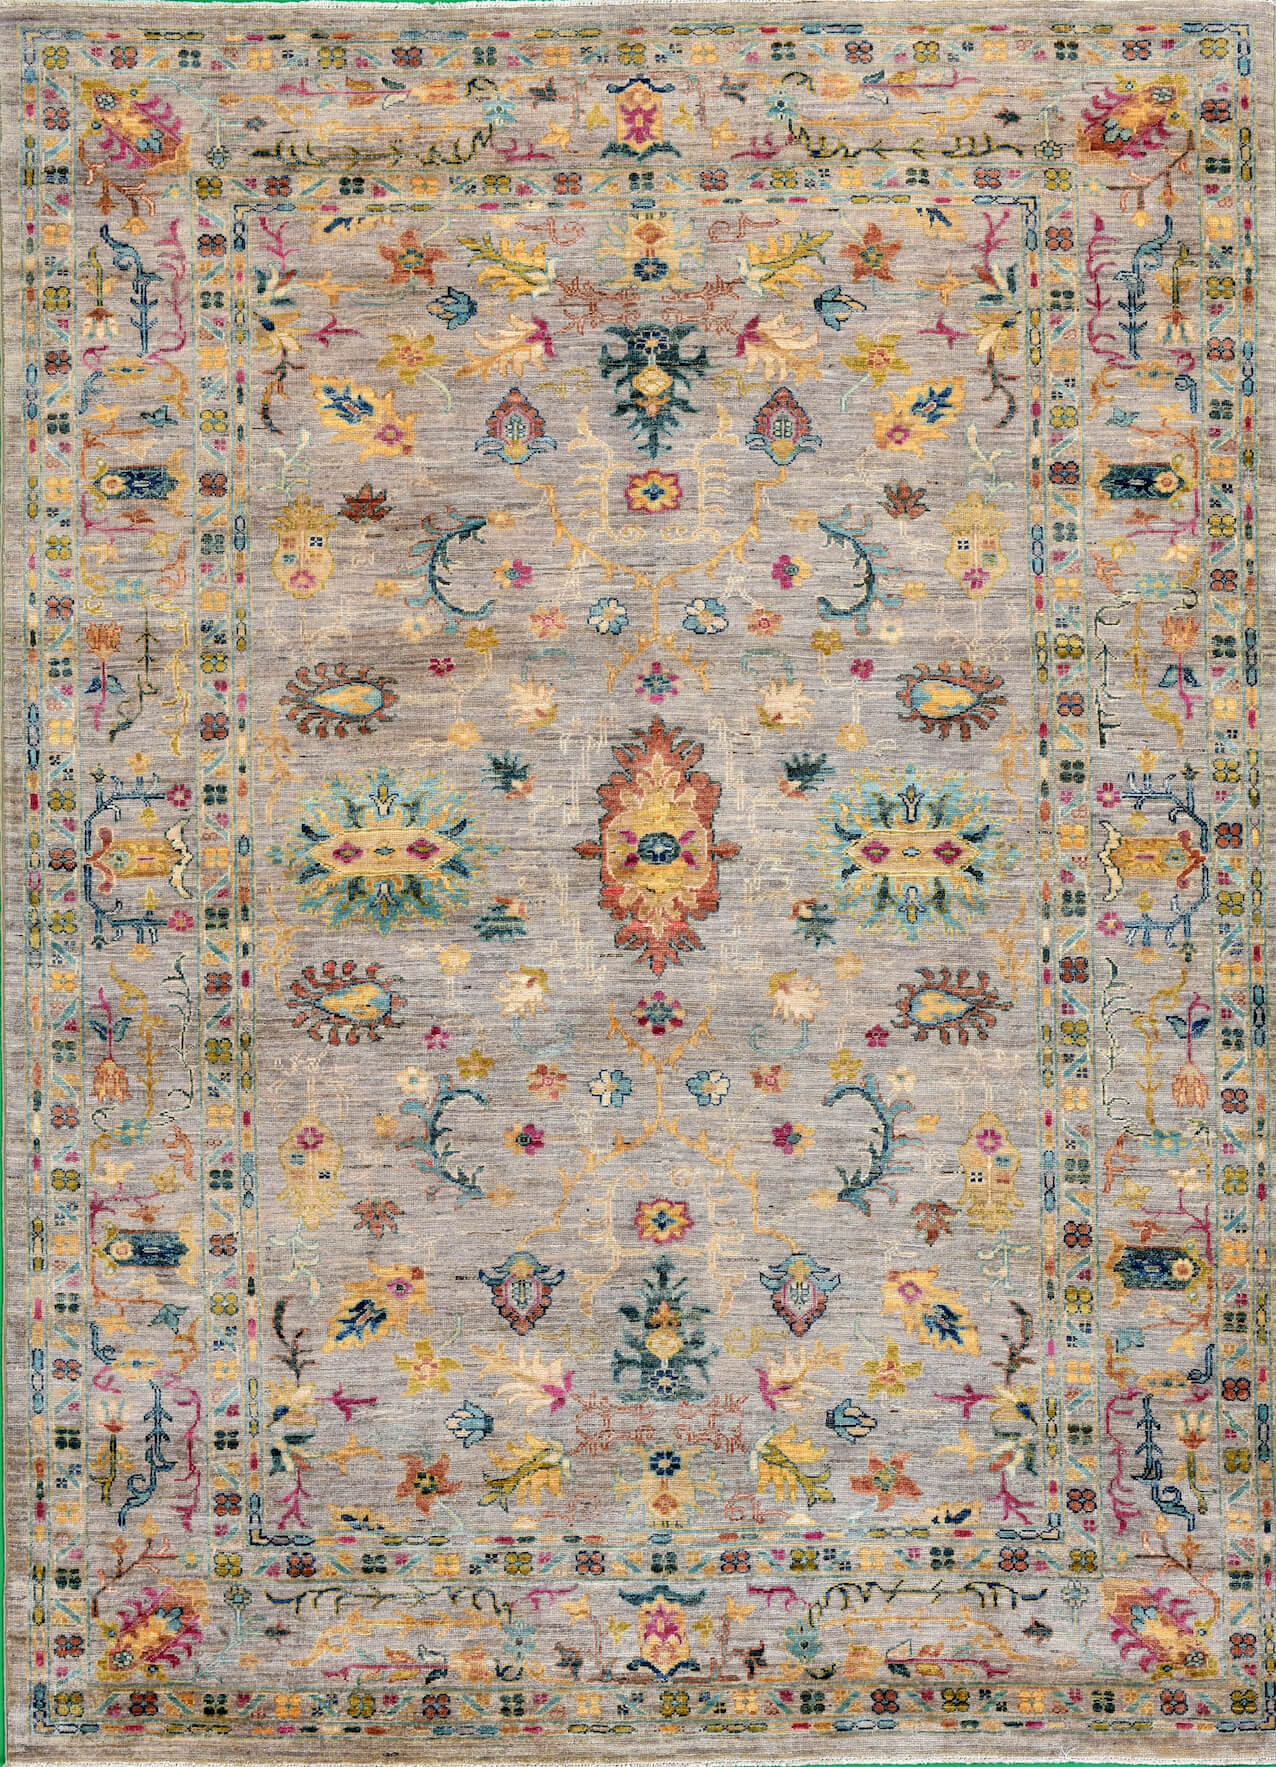 Afghanischer Teppich Rubin Middle, von Hand gefertigt, reine Schurwolle, mehrfarbig, Draufsicht